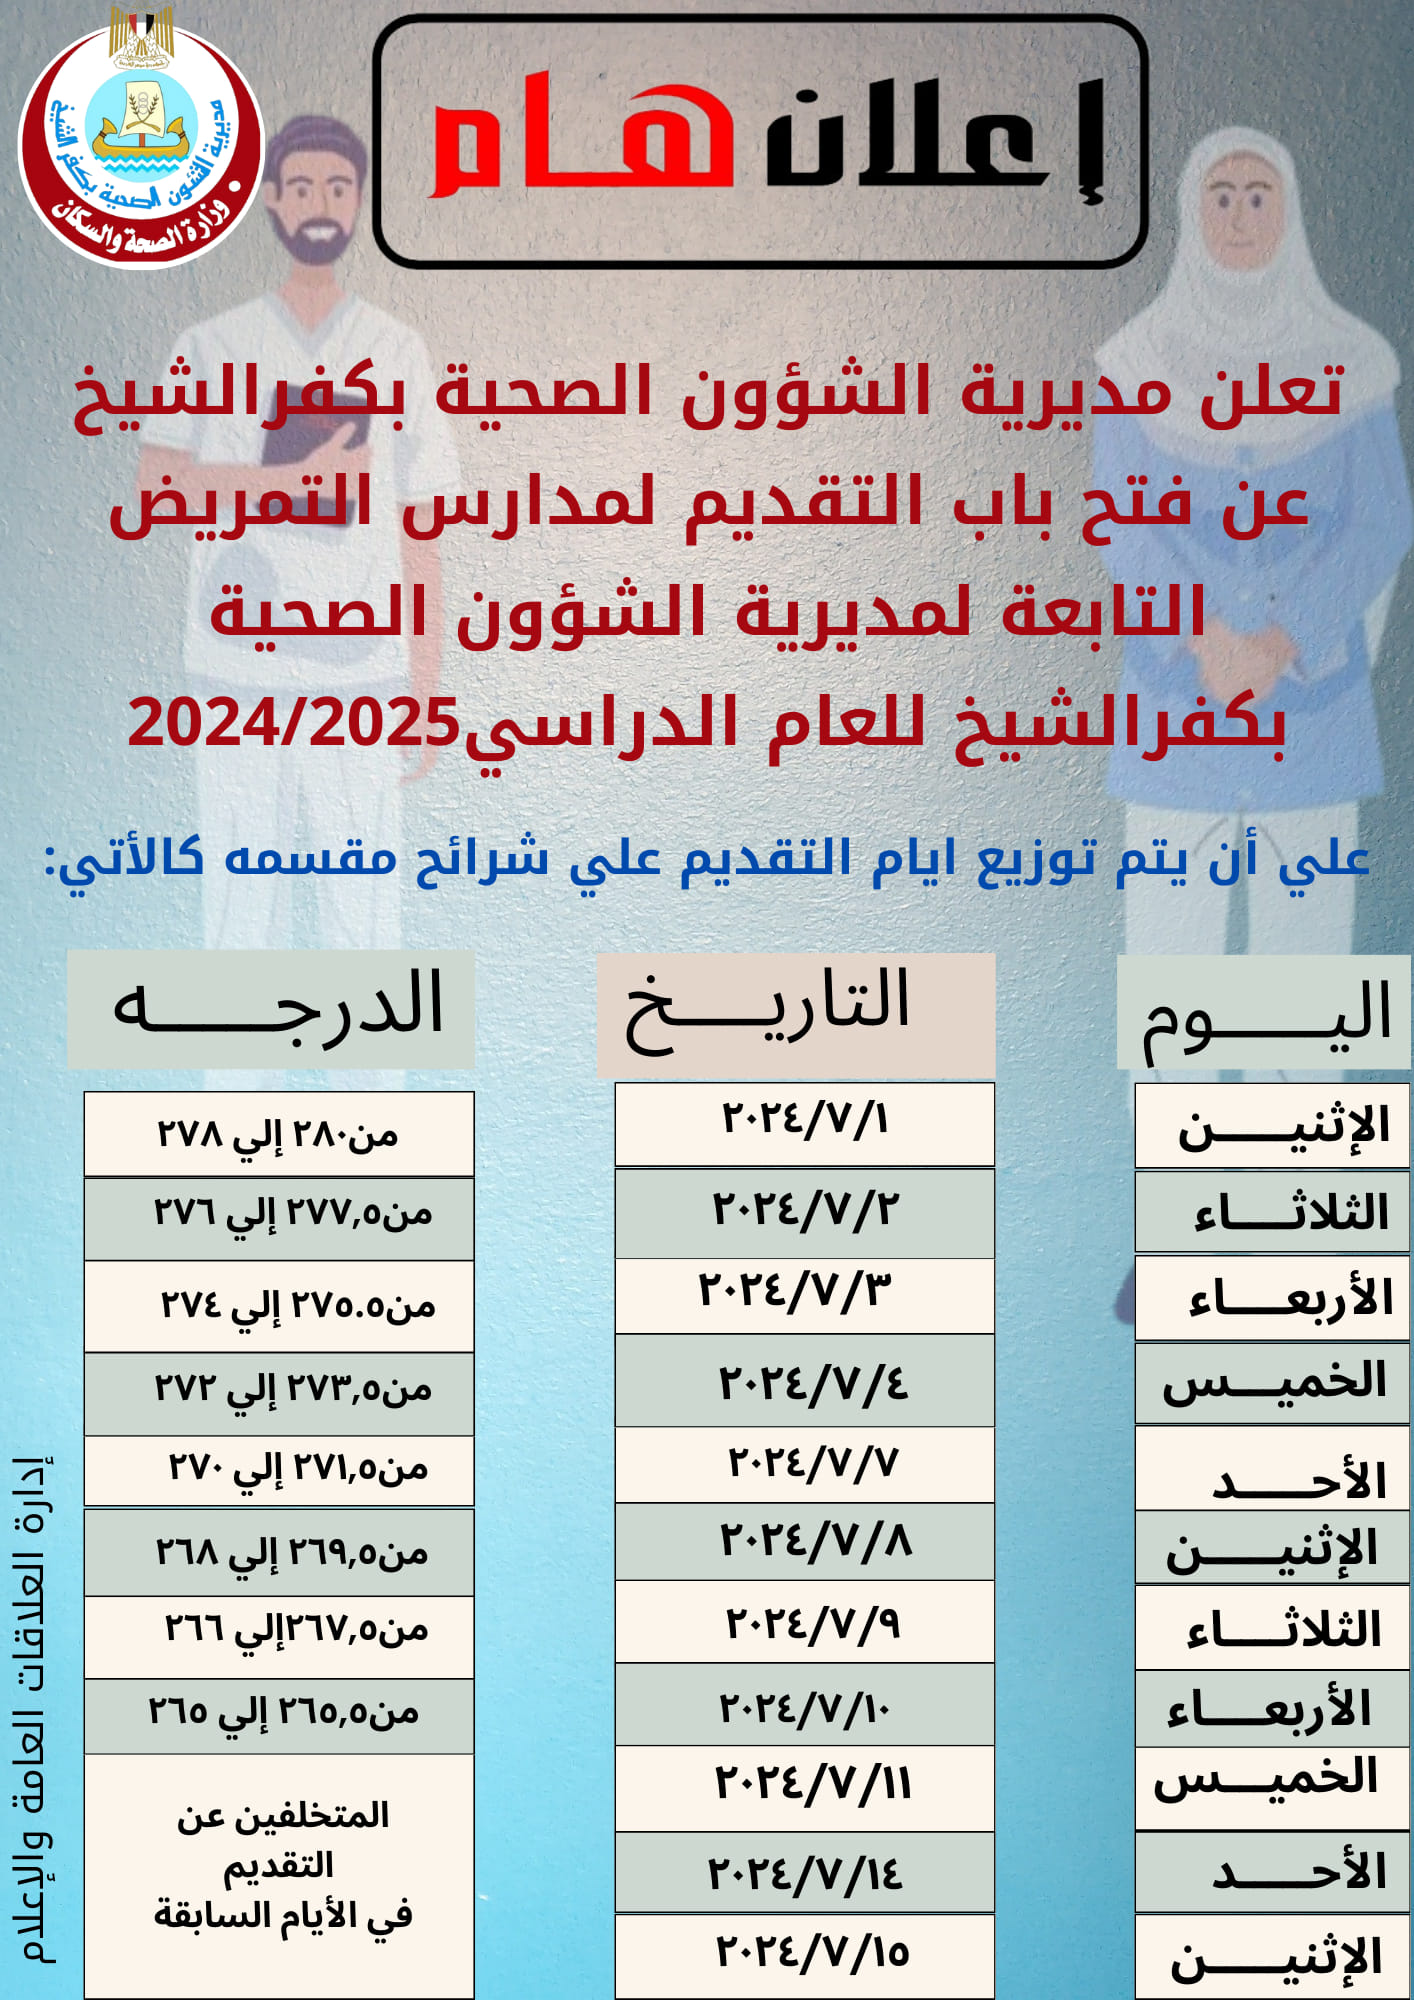 مواعيد التقديم لمدارس التمريض بمحافظة كفر الشيخ